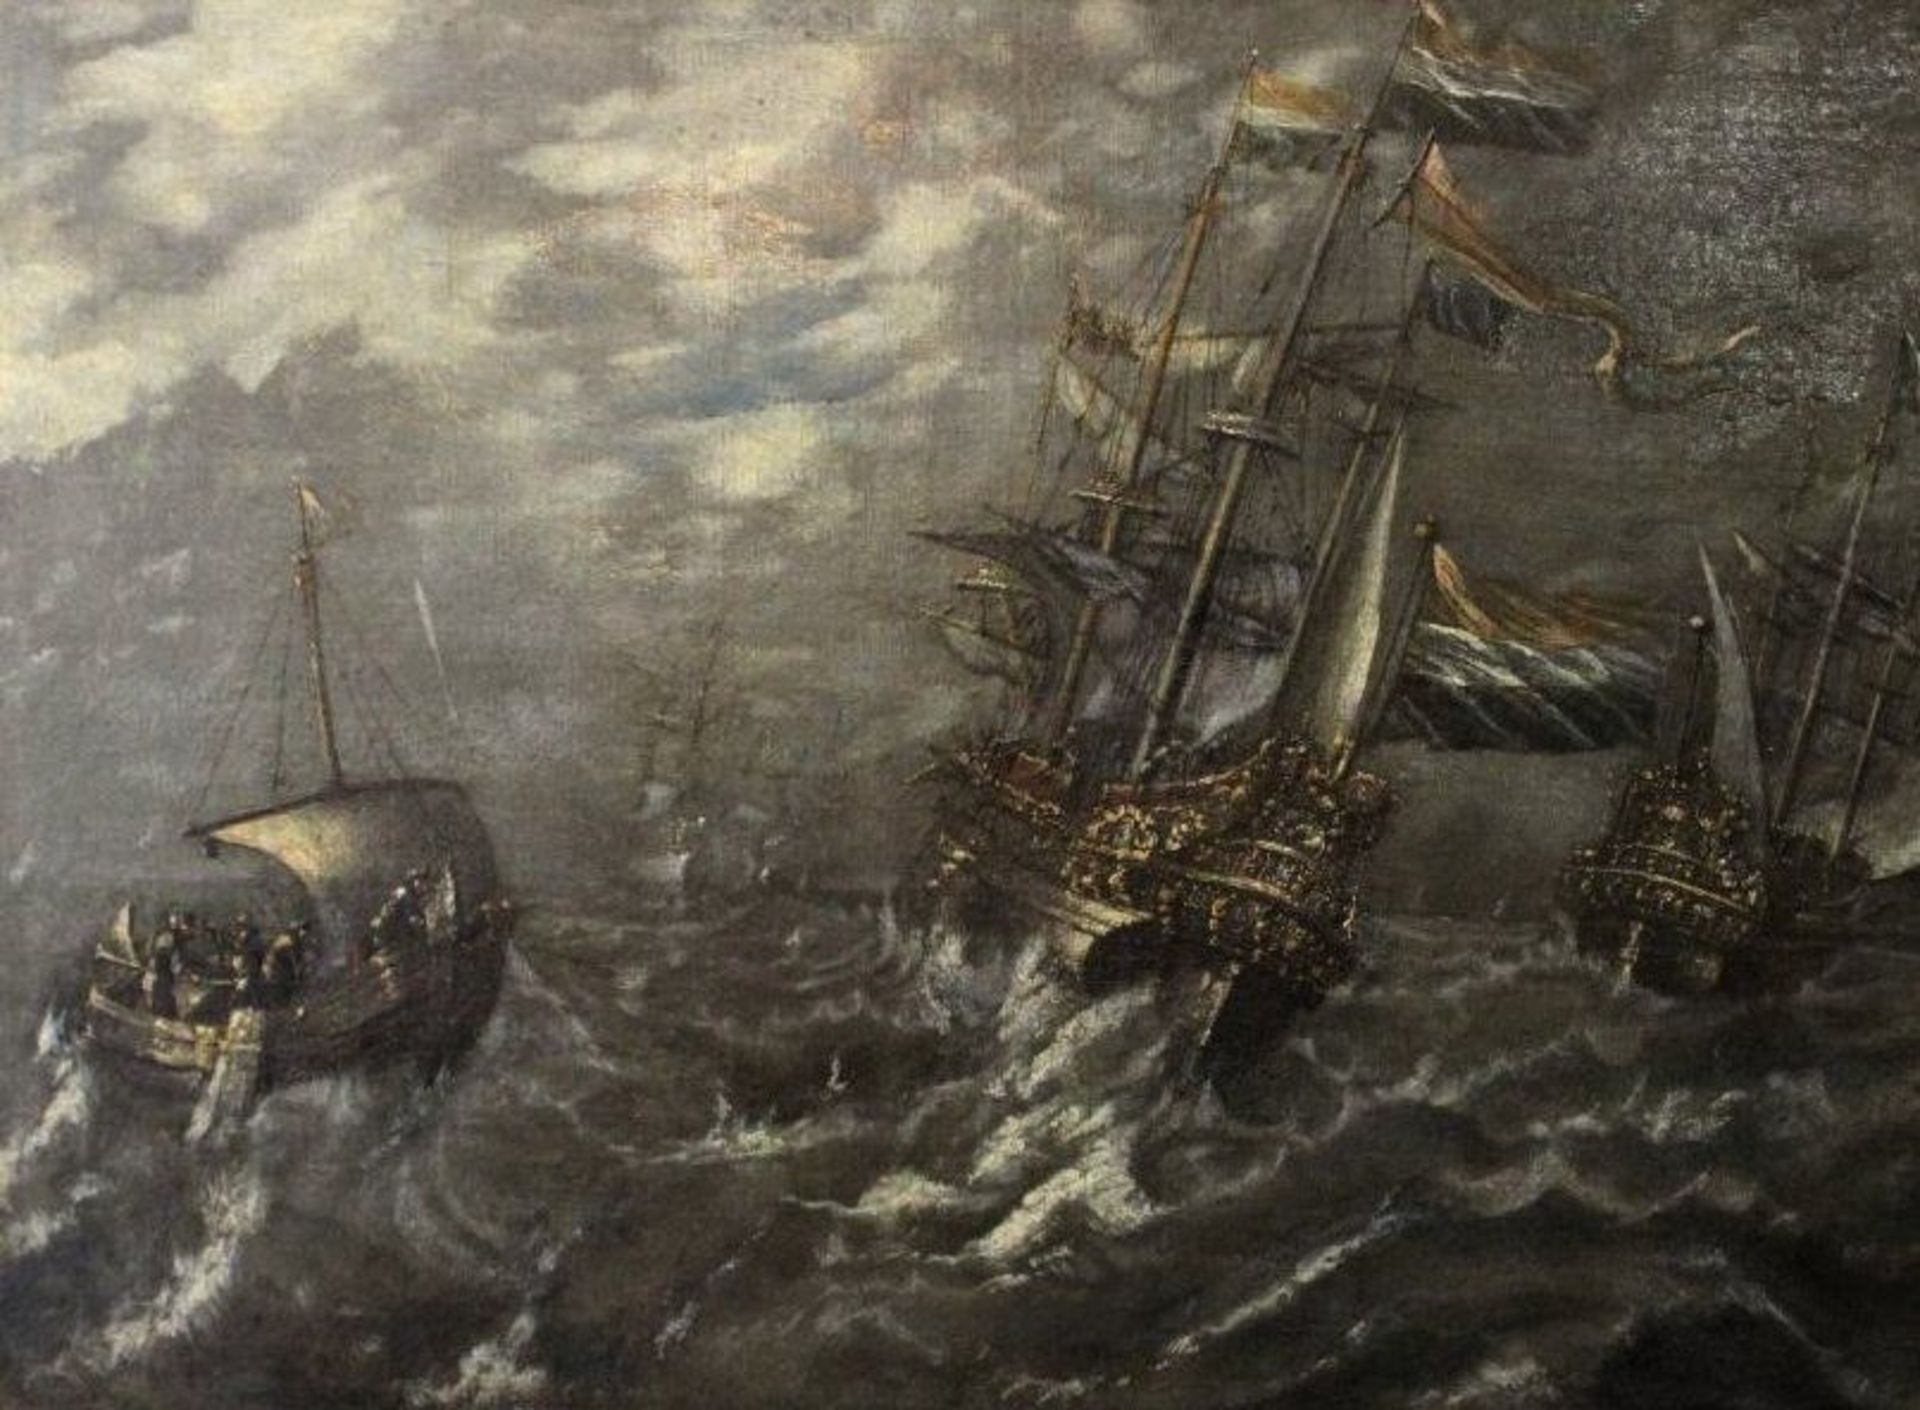 niederländischer Marinemaler des 18. Jhd., Schiffe in schwerer See, Öl/Leinwand, verso Zettel "